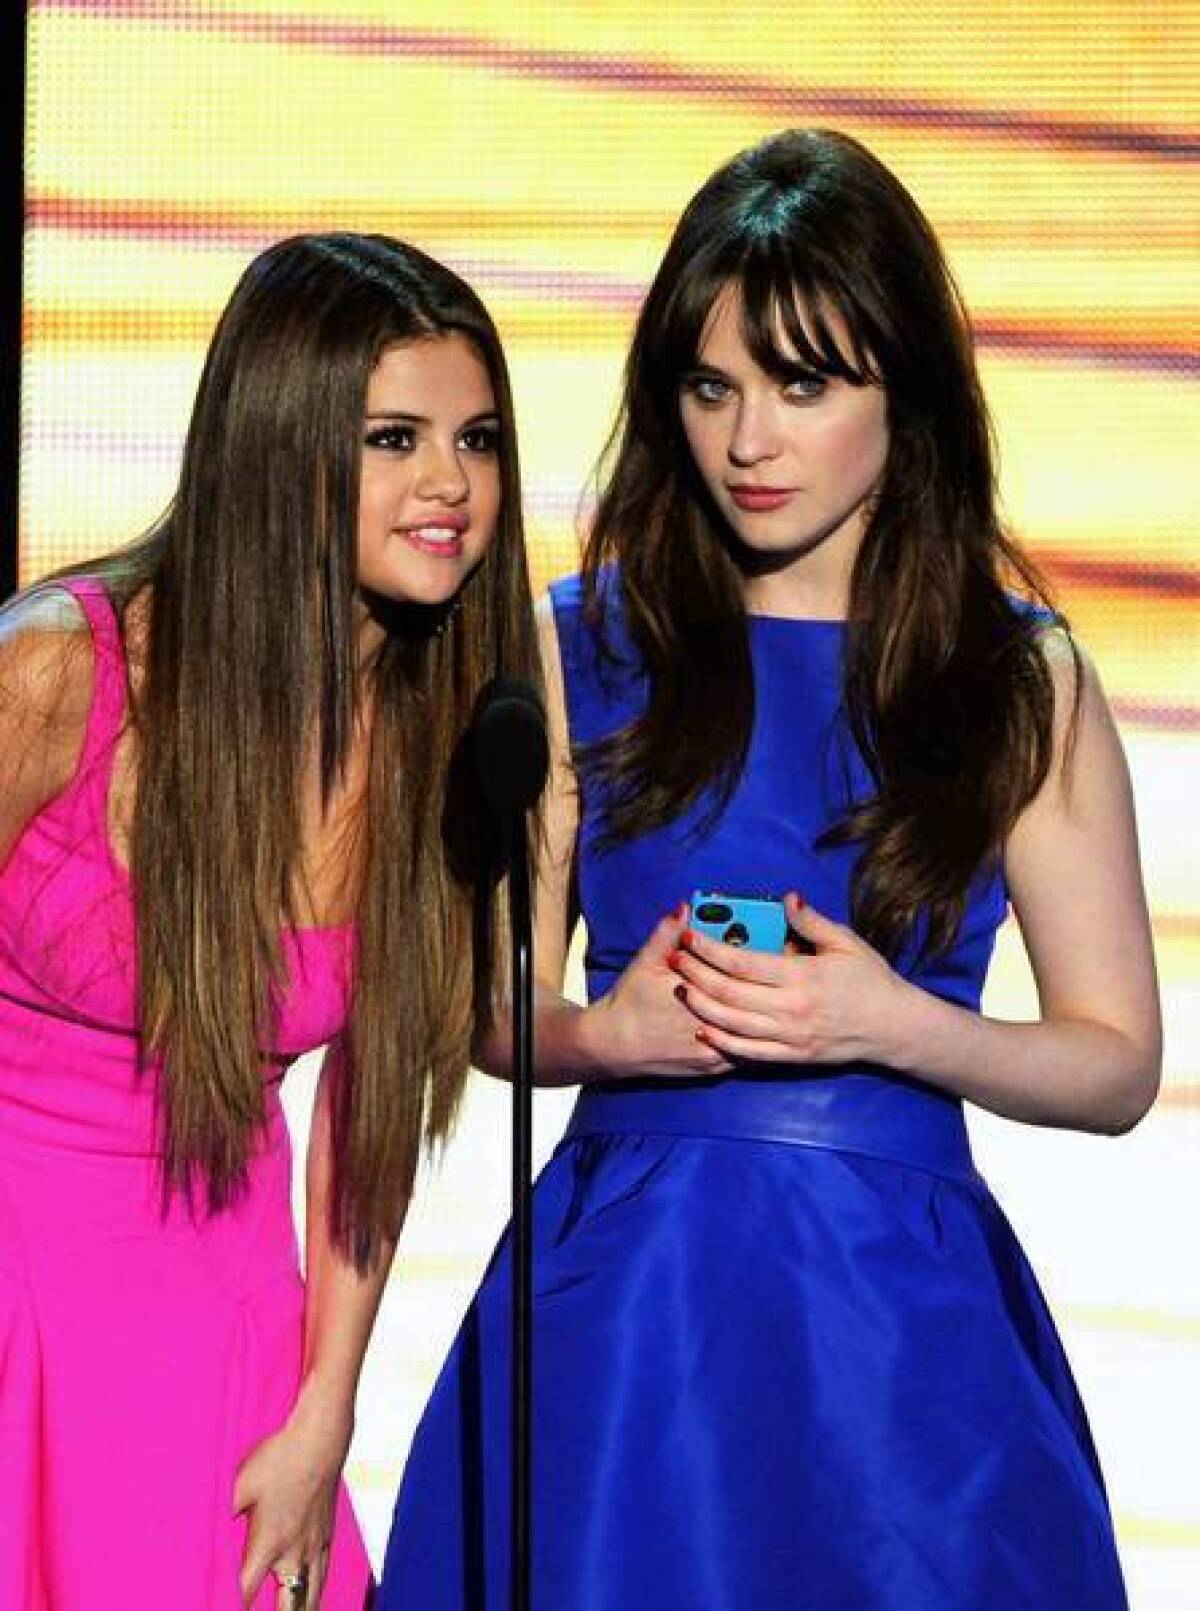 Selena Gomez, left, and Zooey Deschanel have looks teens relate to.